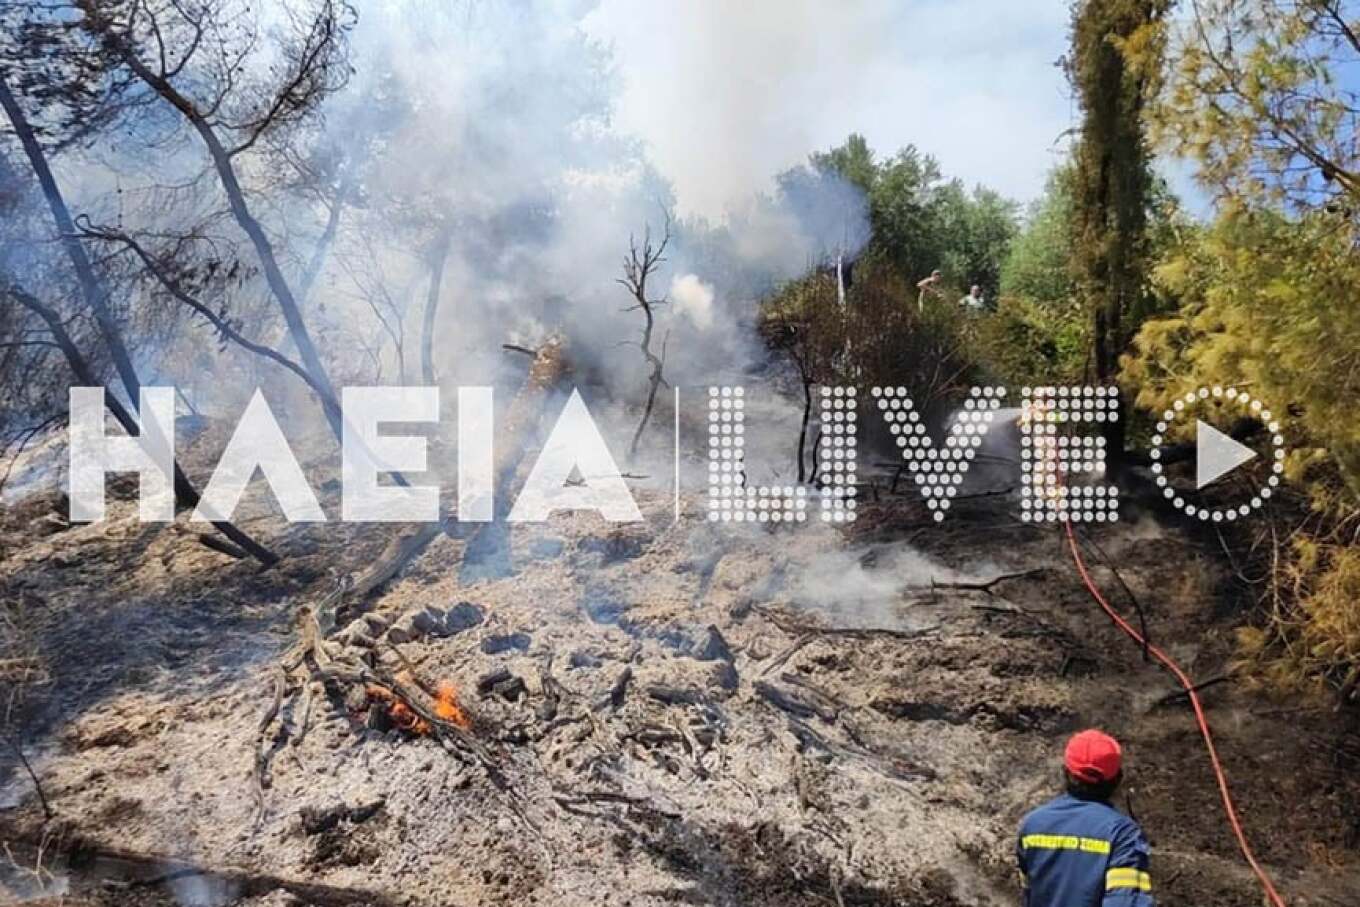 Ηλεία: Τριπλό μέτωπο σε Παλαιοβαρβάσαινα, Σαλμώνη και Αρχαία Ολυμπία - Κοντά σε σπίτια οι φλόγες, μήνυμα 112 για εκκένωση